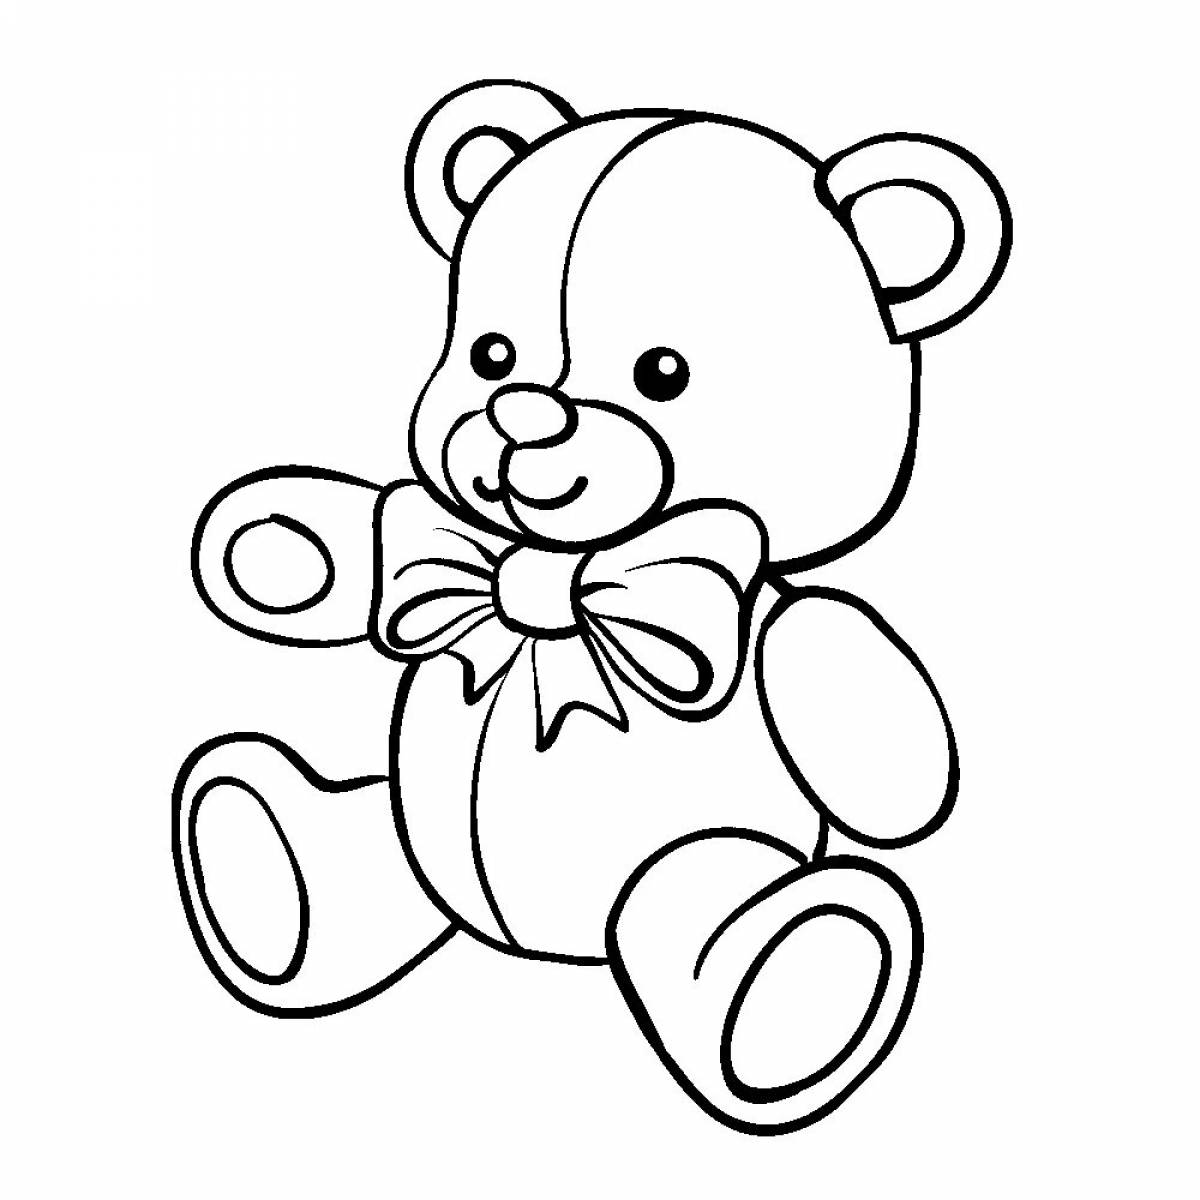 Teddy bear #1